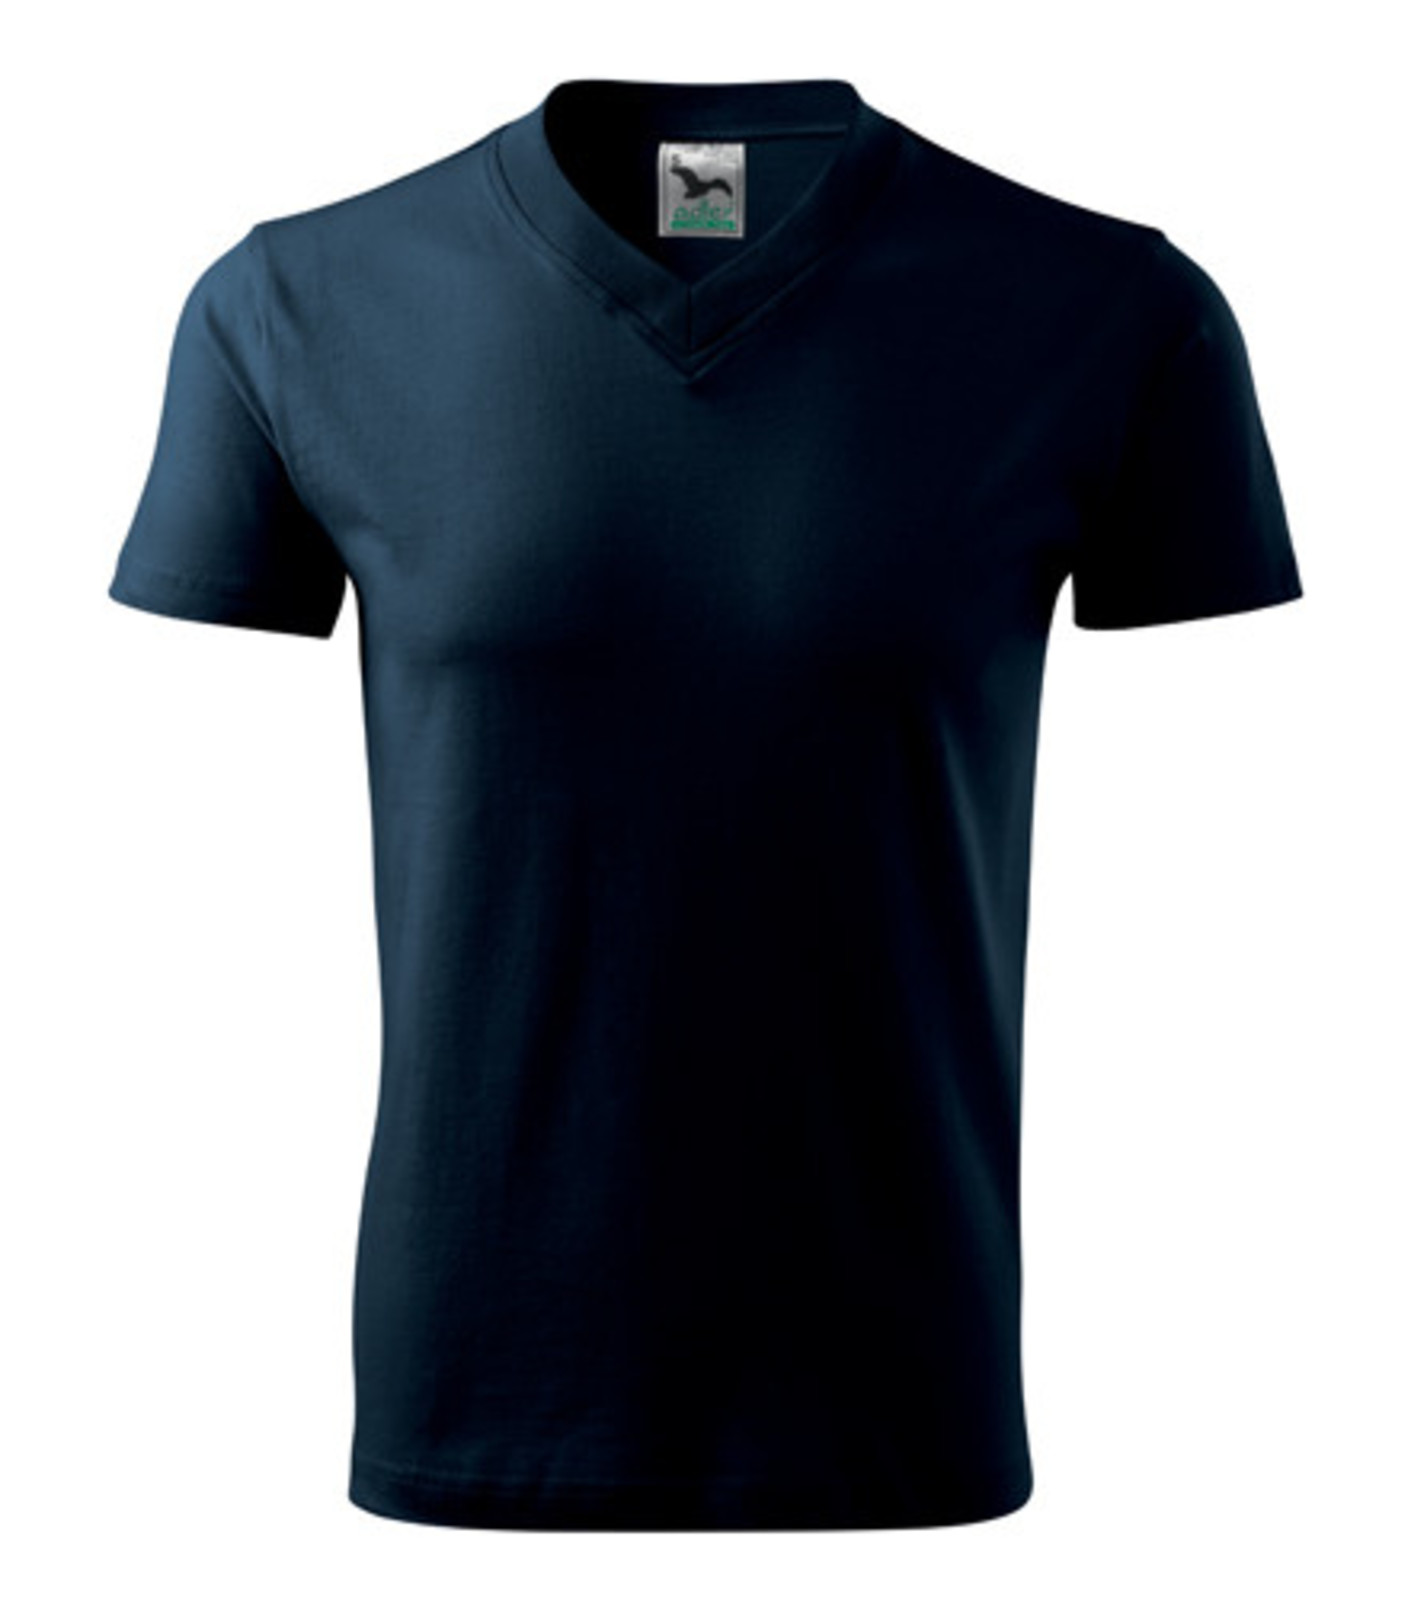 Unisex tričko s výstrihom Adler V-Neck 102 - veľkosť: S, farba: tmavo modrá